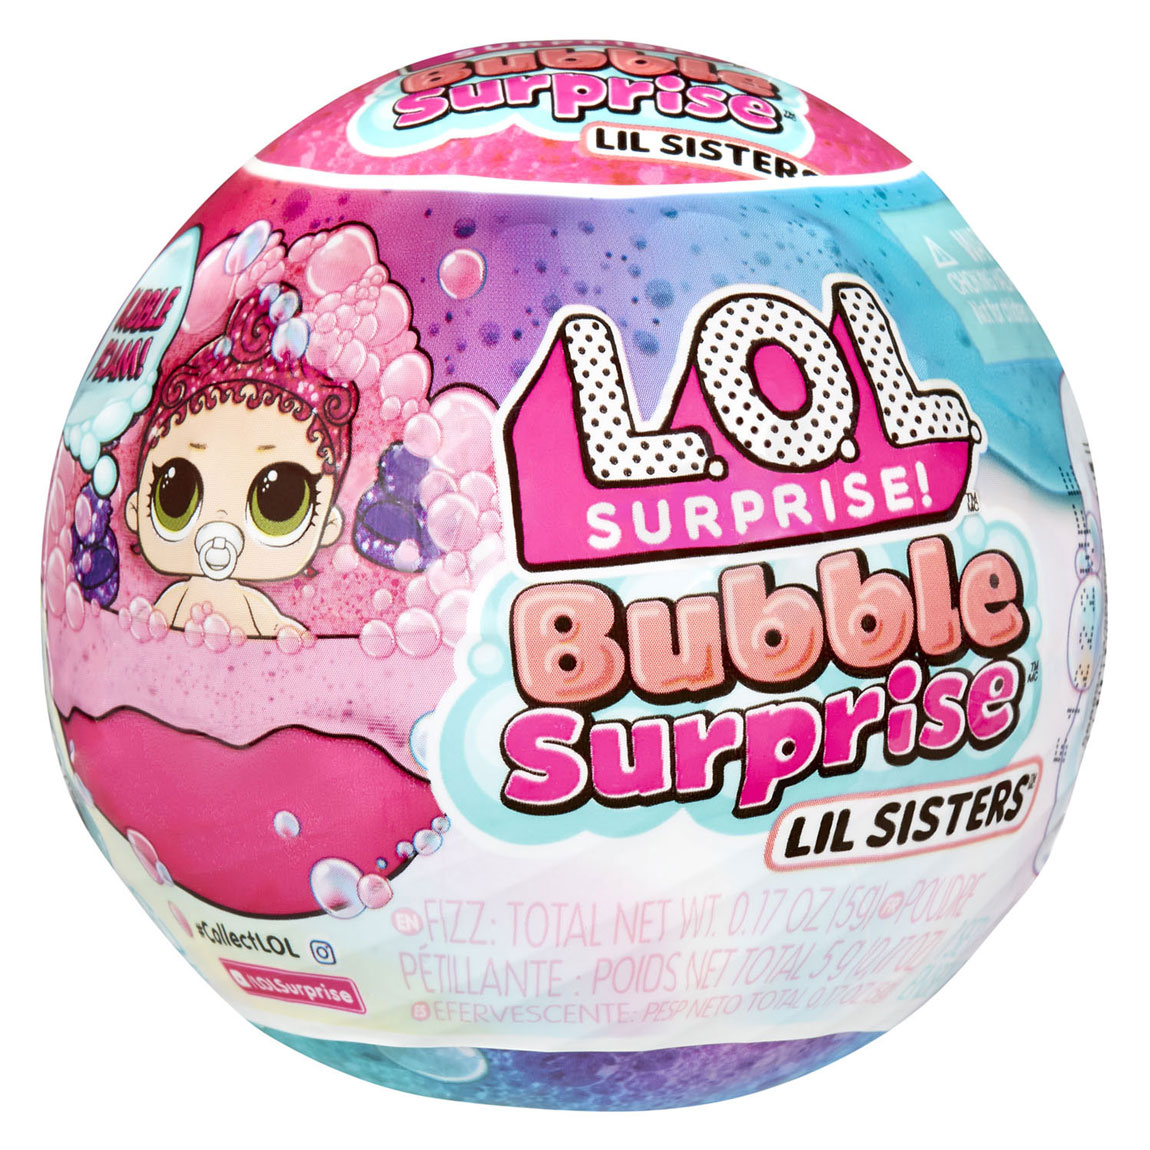 L.O.L. Surprise Bubble Surprise Lil Sisters Mini Pop